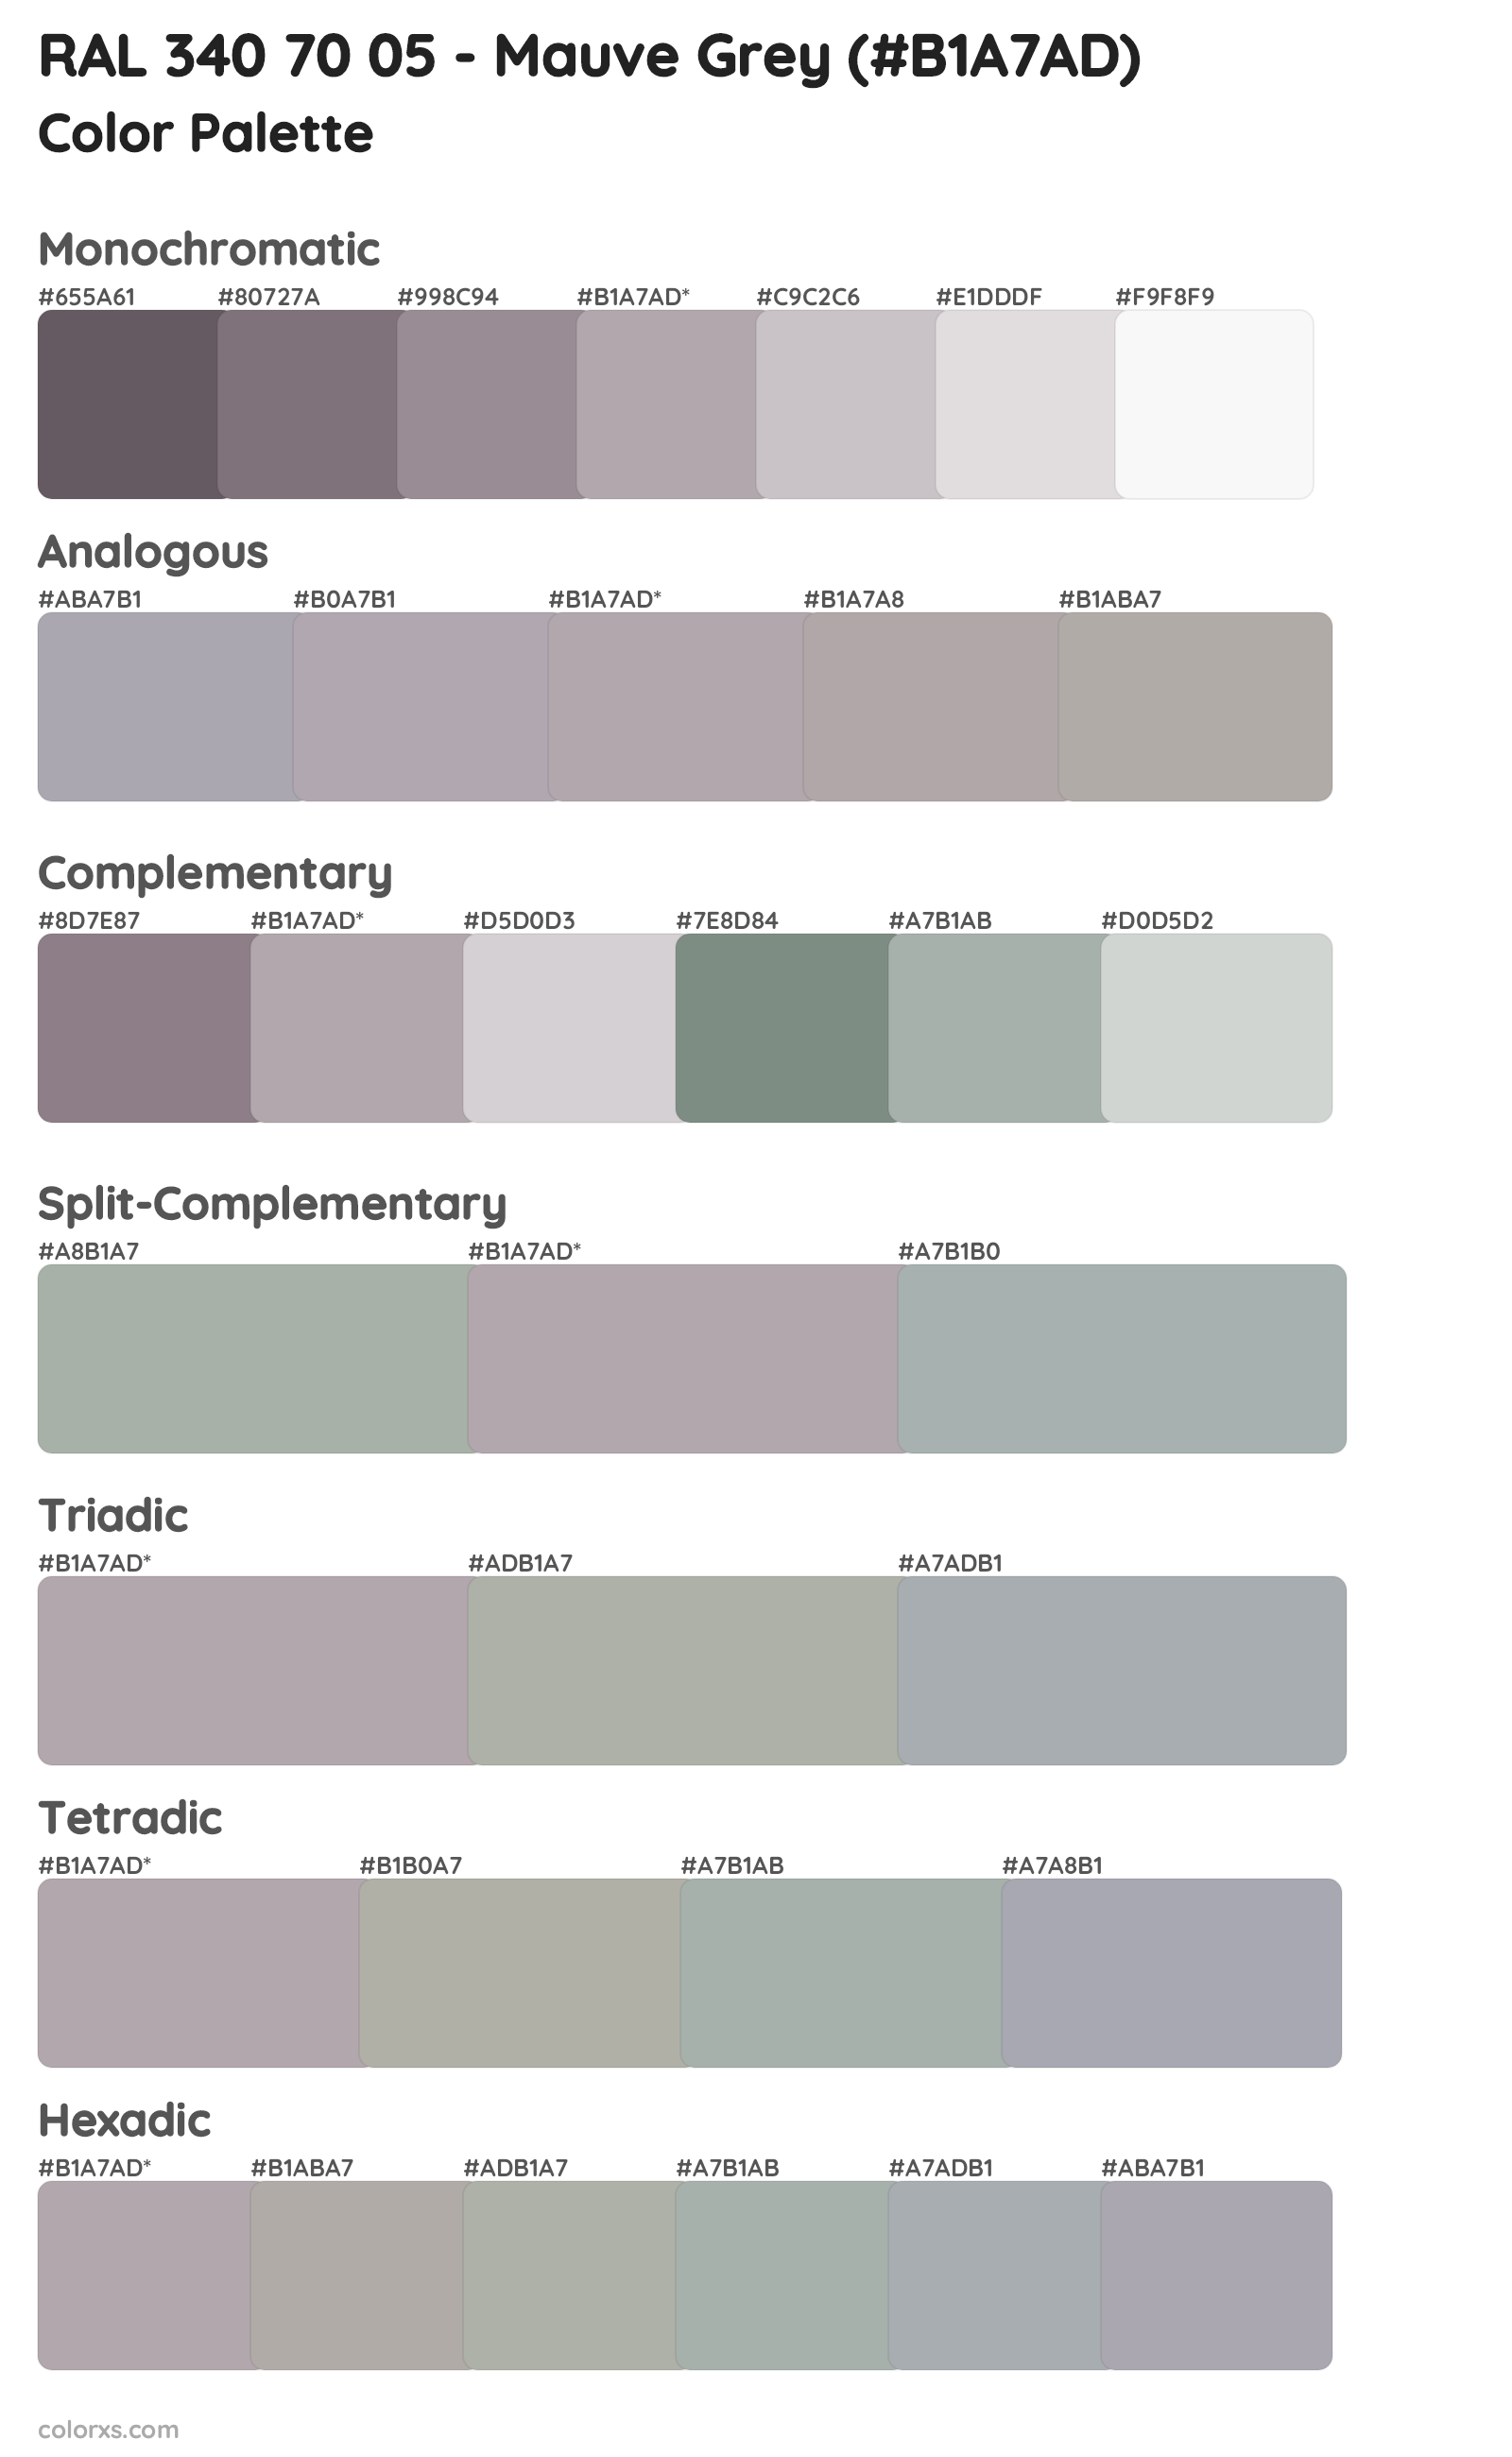 RAL 340 70 05 - Mauve Grey color palettes and color scheme combinations 